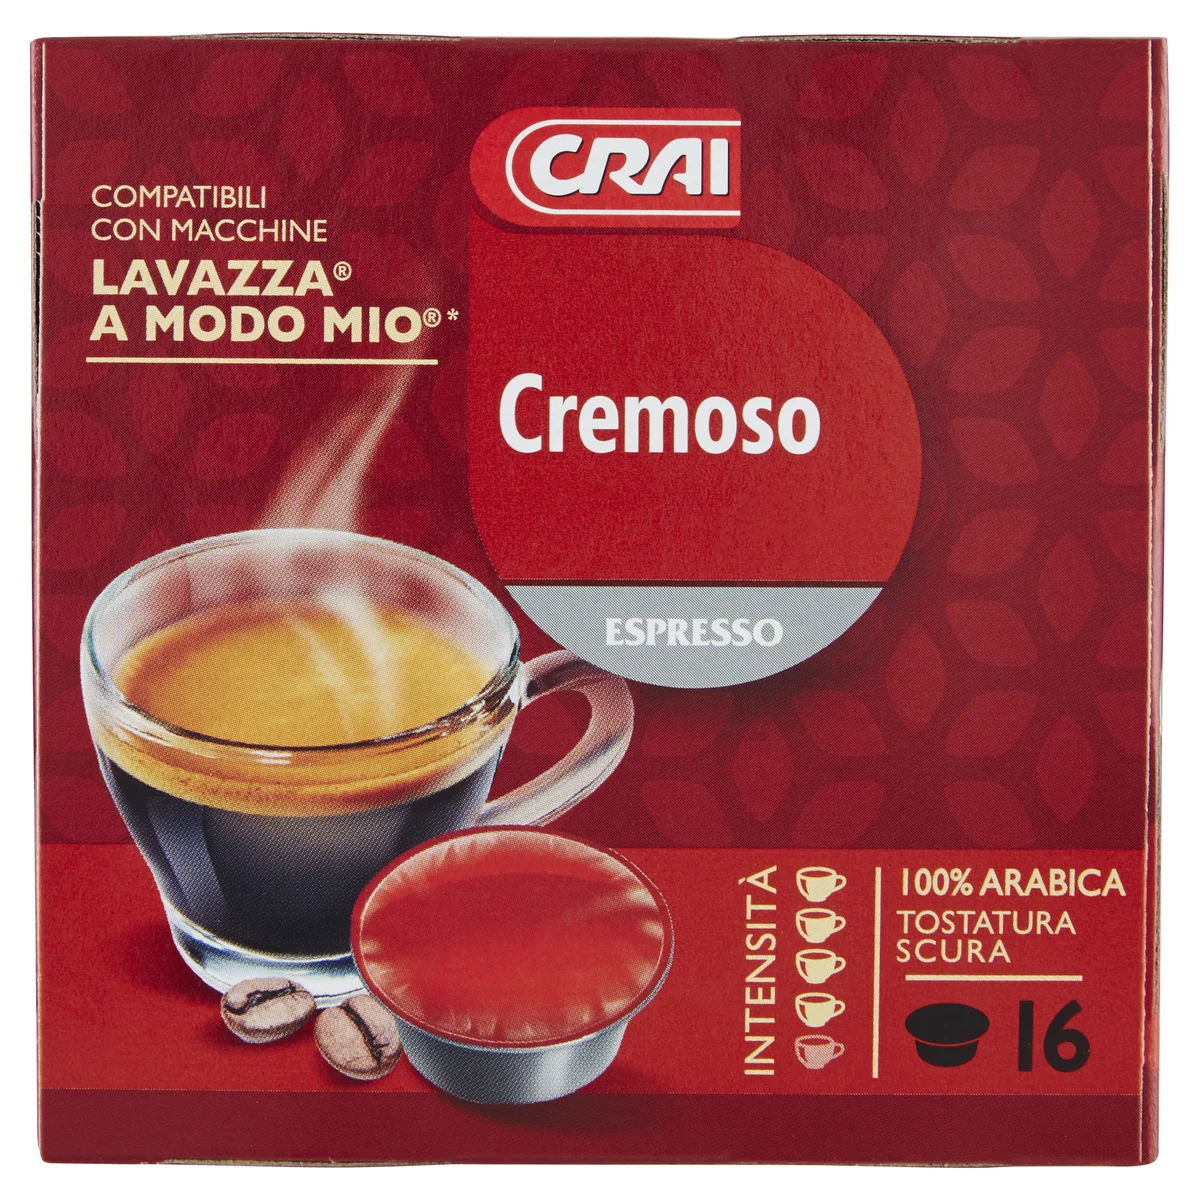 Crai Cremoso Espresso 16 Capsule Compatibili Con Macchine Lavazza A Modo Mio*  104 g